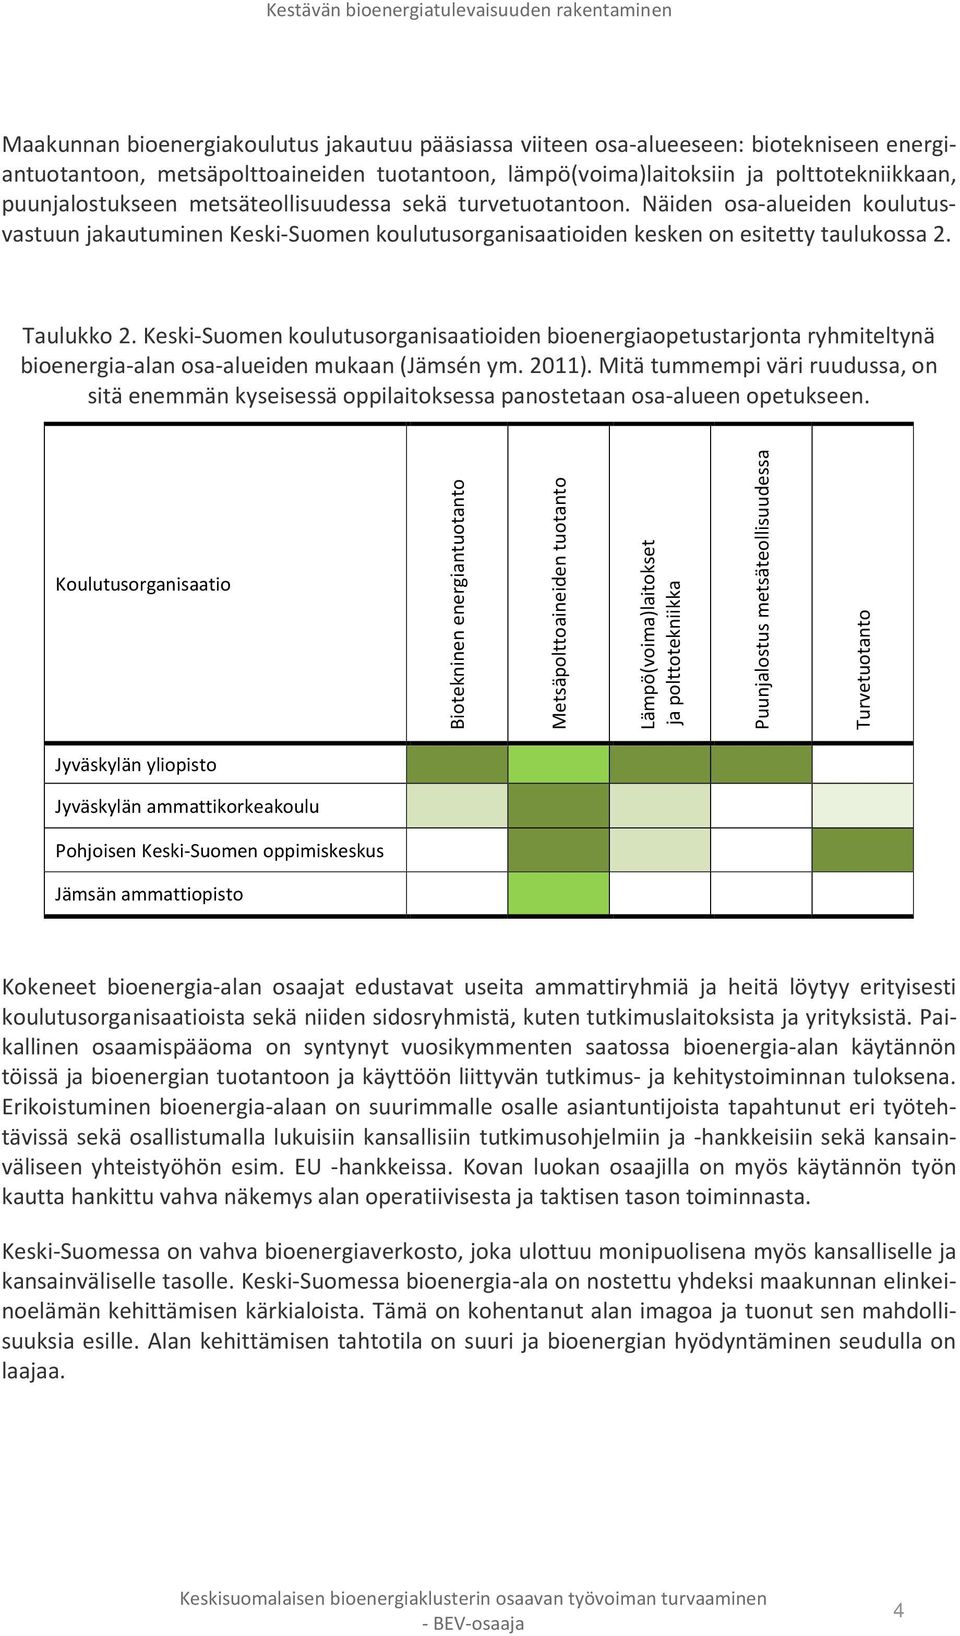 Keski-Suomen koulutusorganisaatioiden bioenergiaopetustarjonta ryhmiteltynä bioenergia-alan osa-alueiden mukaan (Jämsén ym. 2011).